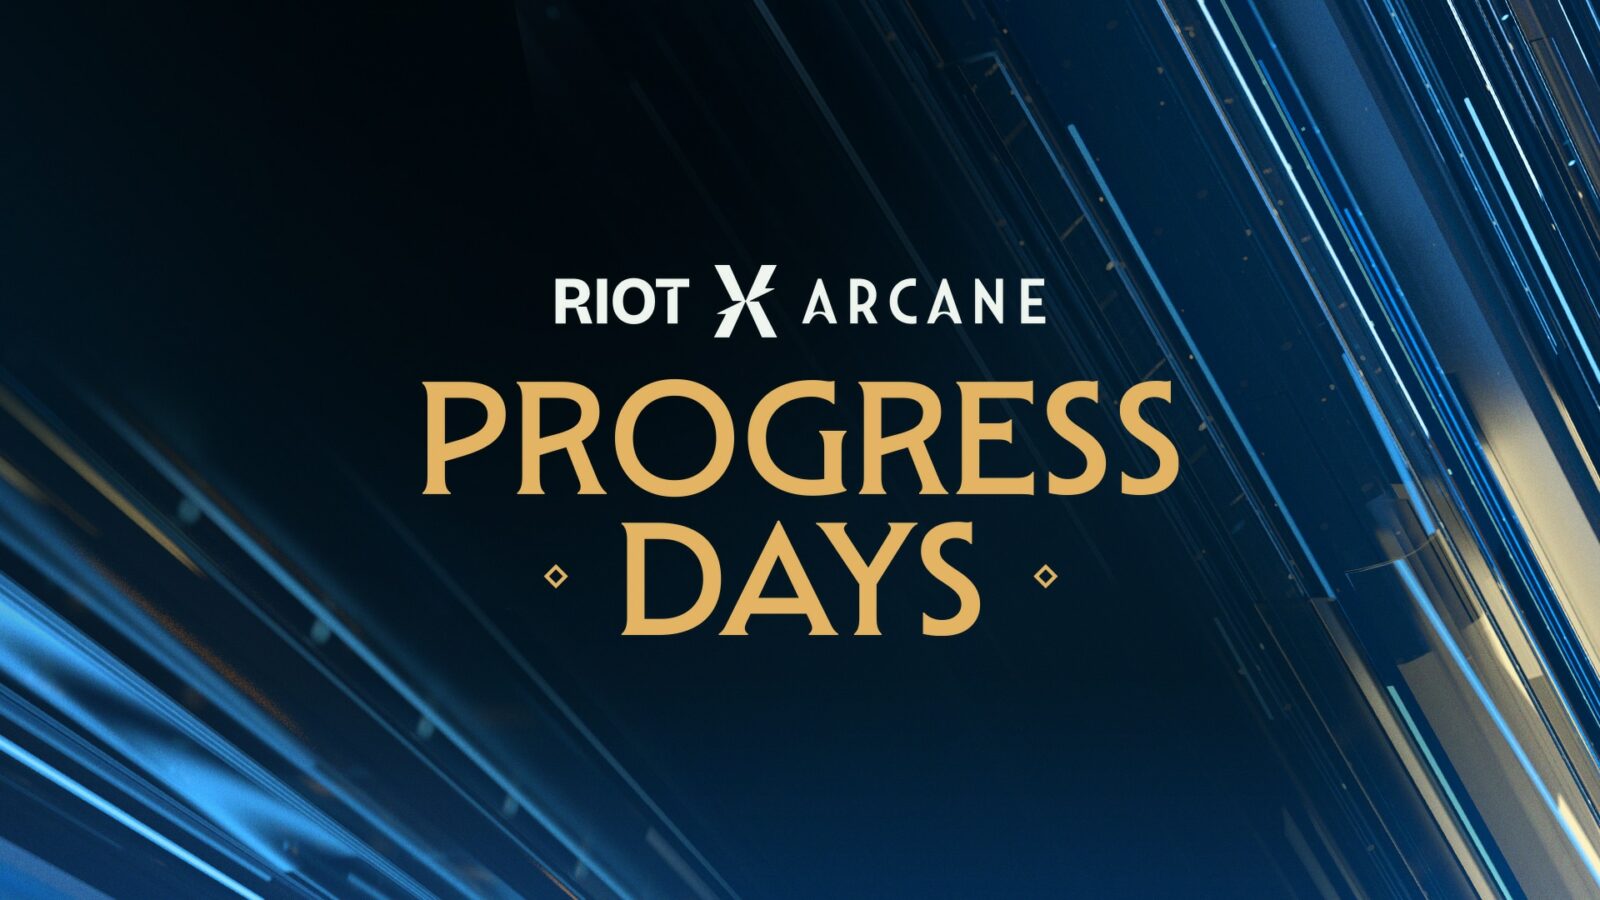 Il mese dedicato a RiotX Arcane si arricchisce con le celebrazioni dei Progress Days thumbnail